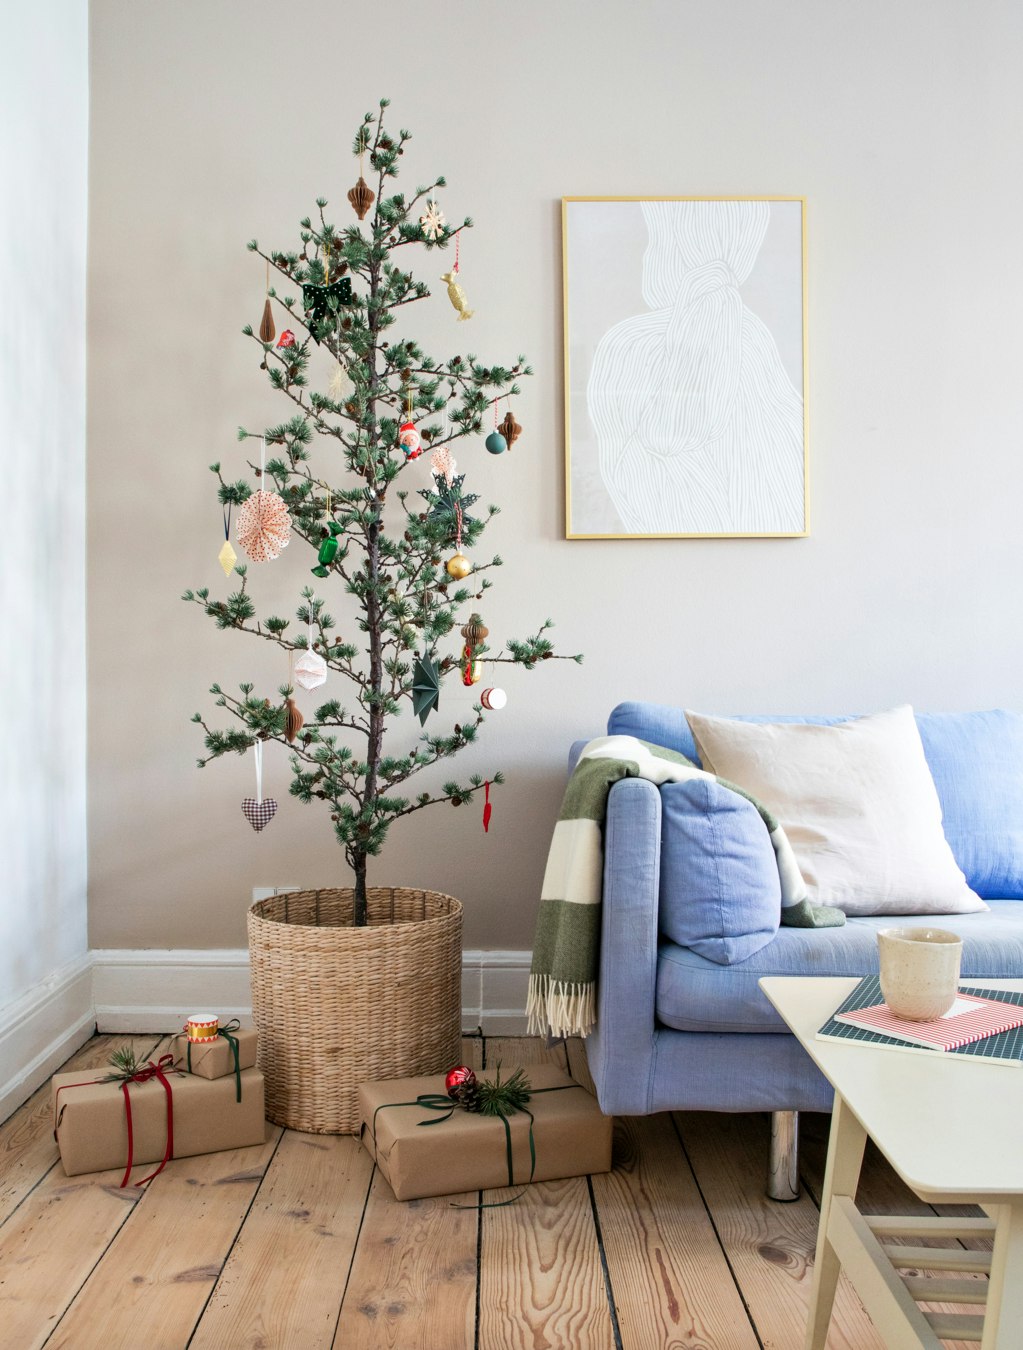 Cedertræ pyntet op til jul med ornamenter og gaver omkring ved siden af lyseblå sofa